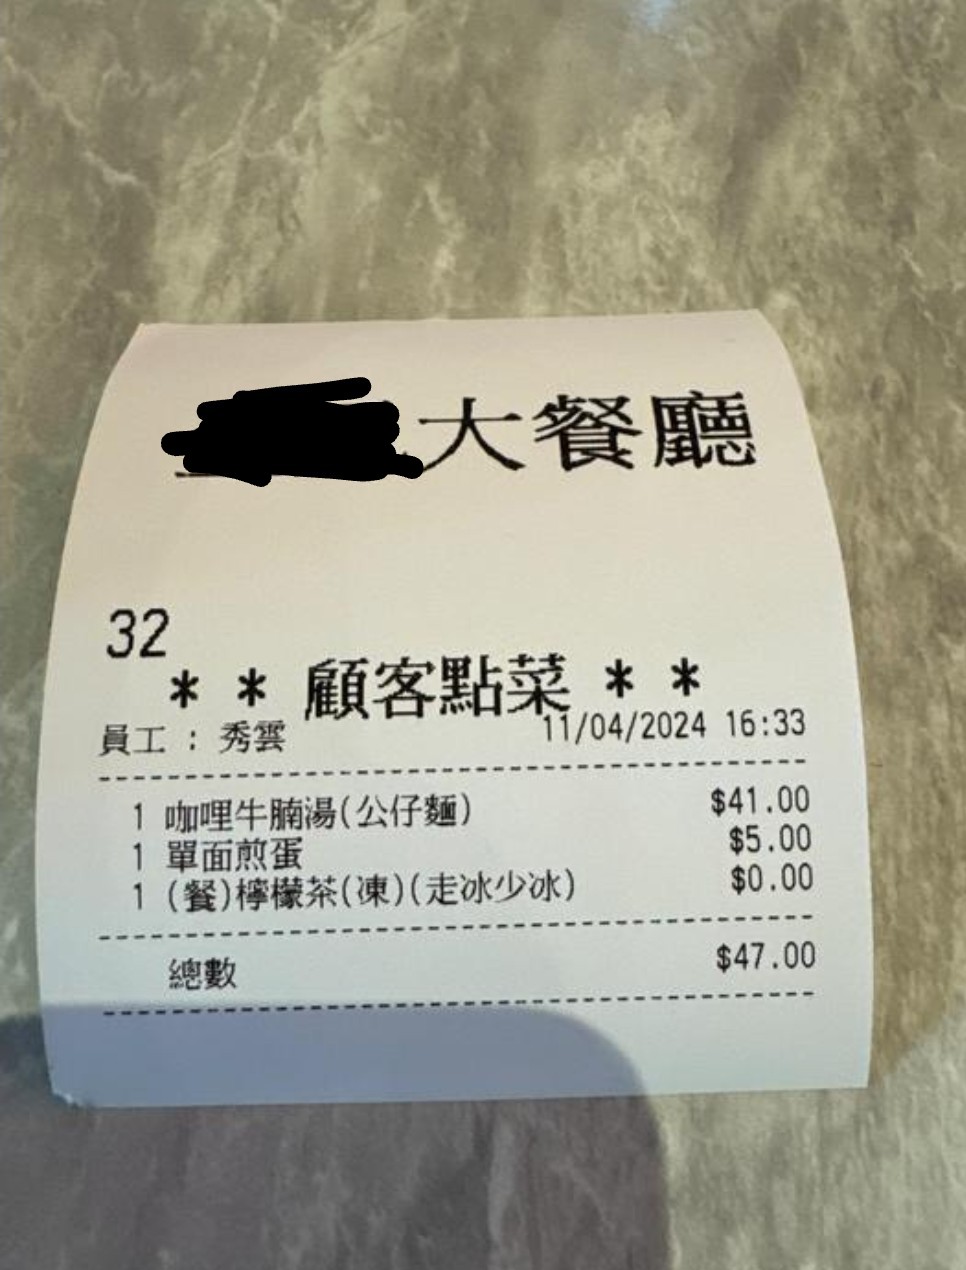 港男茶餐厅被收取奇怪费用经过｜由事主张贴的收据可见，他当天在茶餐厅点选了一个下午茶餐，包括咖喱牛腩汤（公仔面）连冻柠茶，合共$41